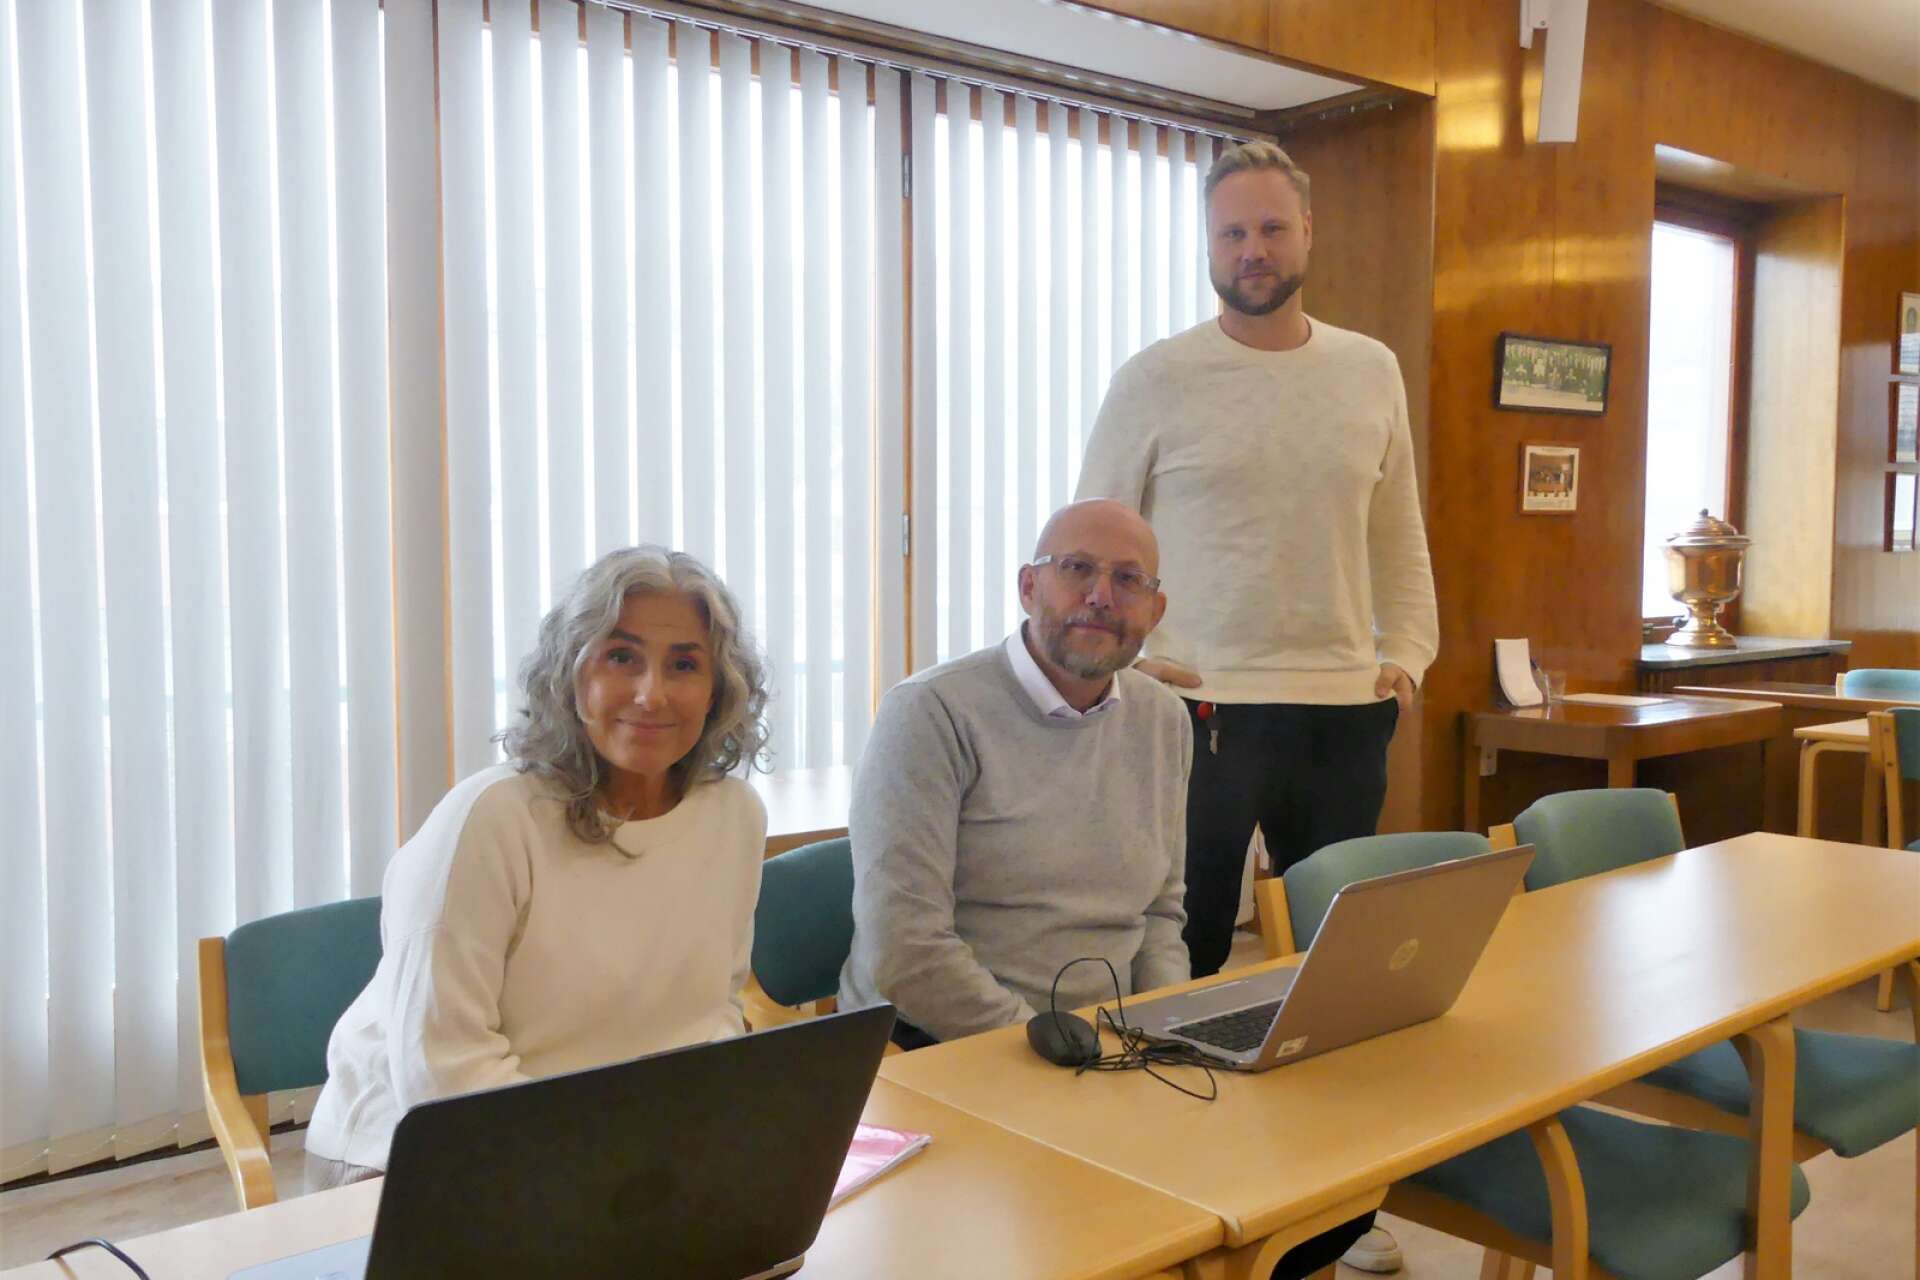 På måndagen blev det officiellt klart att Jan-Erik Samuelsson tar över som ordinarie kommundirektör för Åmåls kommun. Här flankeras Samuelsson av Lena Björk, folkhälsostrateg, och Kristoffer Ljung, näringslivs- och kommunikationschef. Arkivbild.